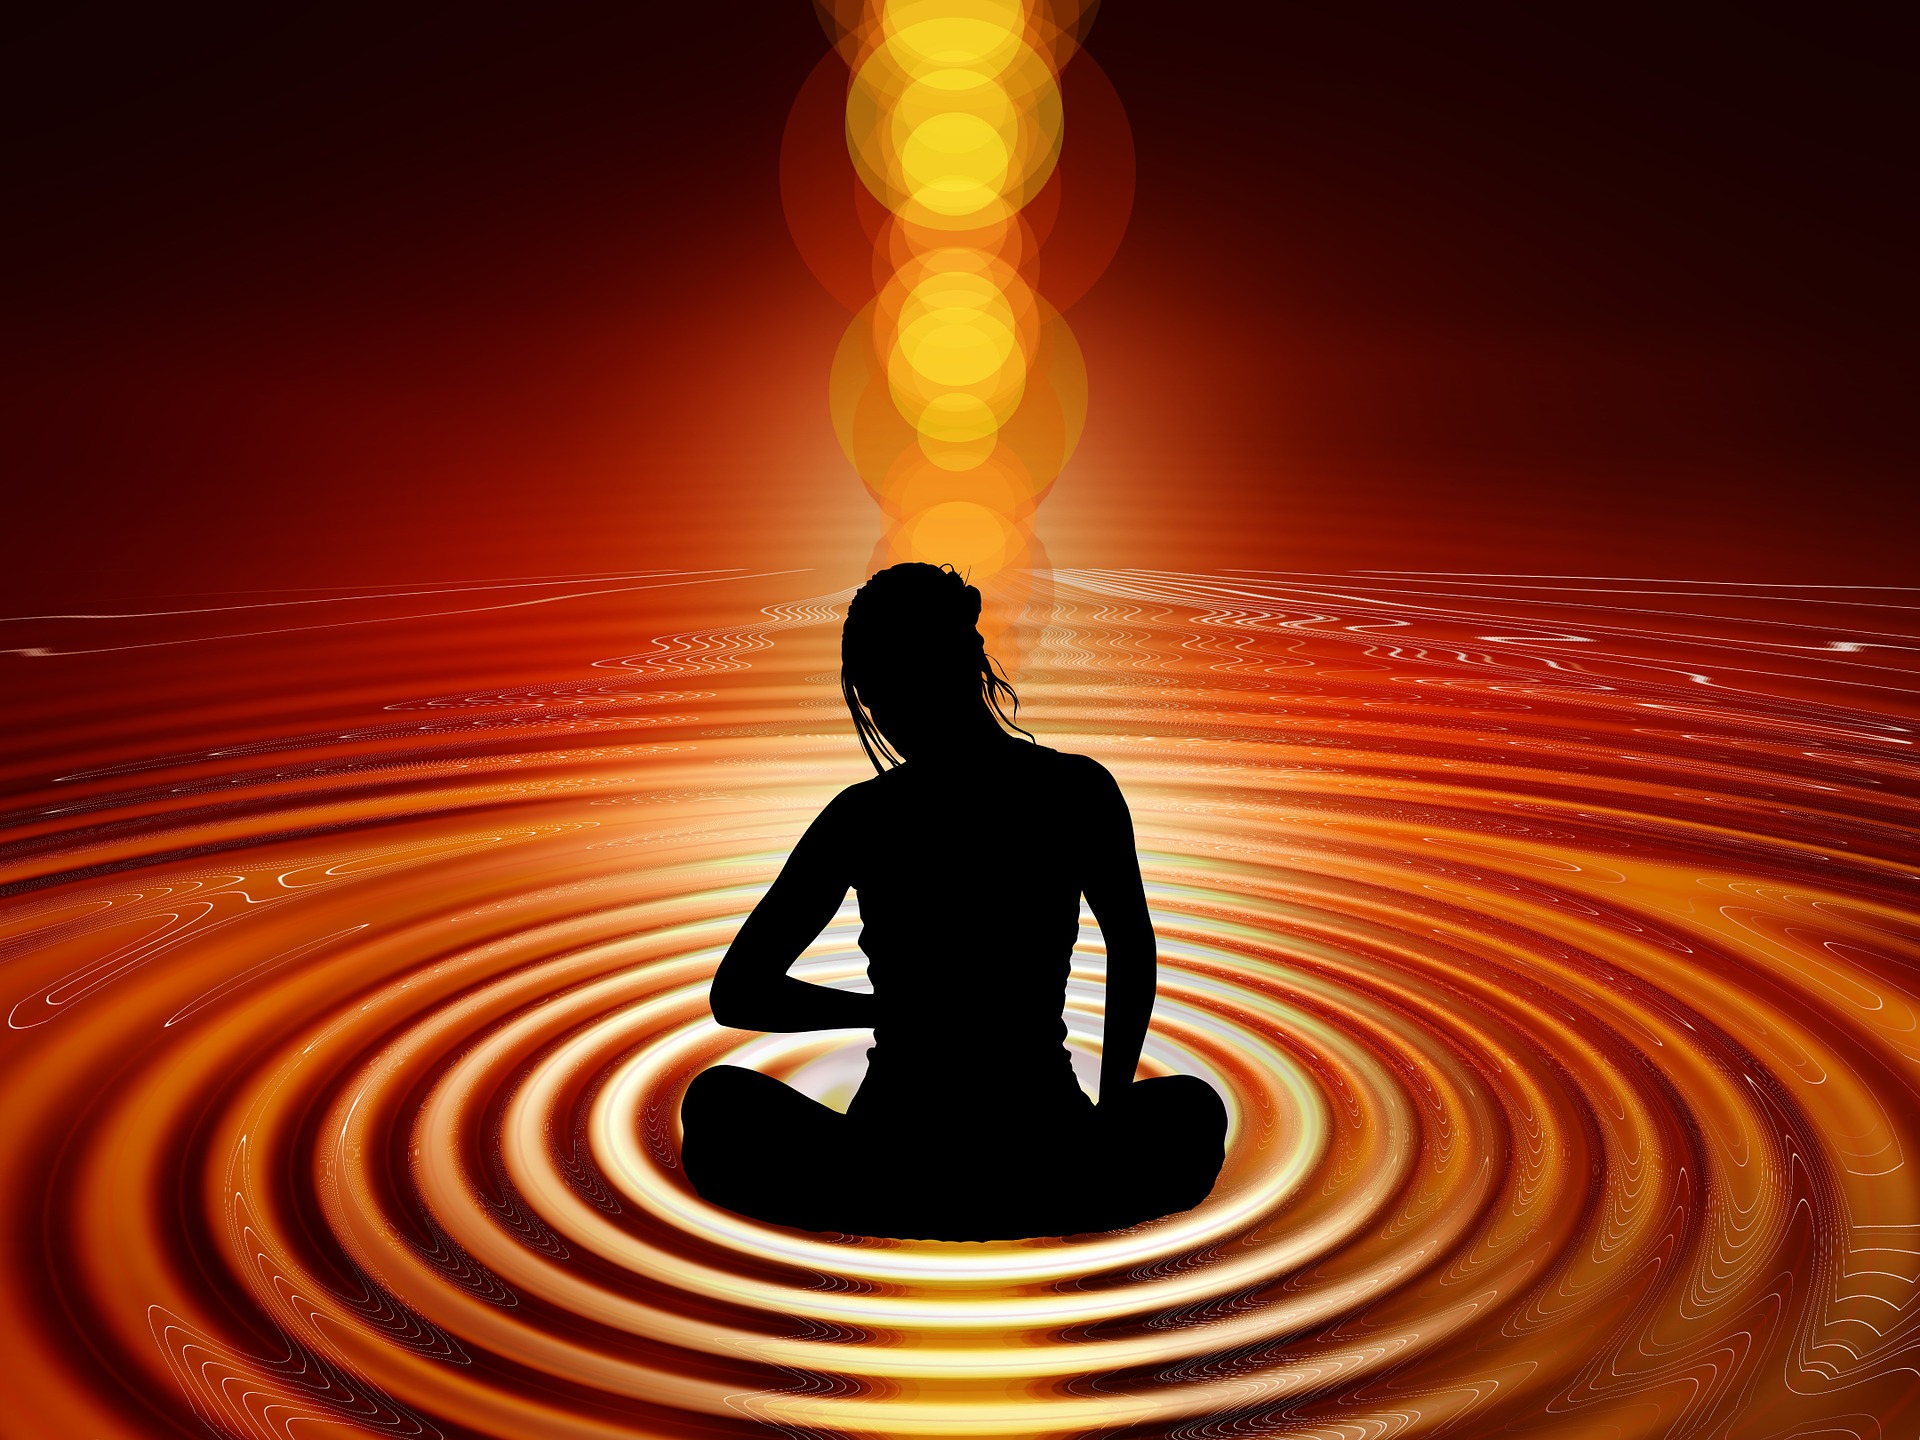 In stilte even een moment voor jezelf. Meditatie, let’s give it a shot!